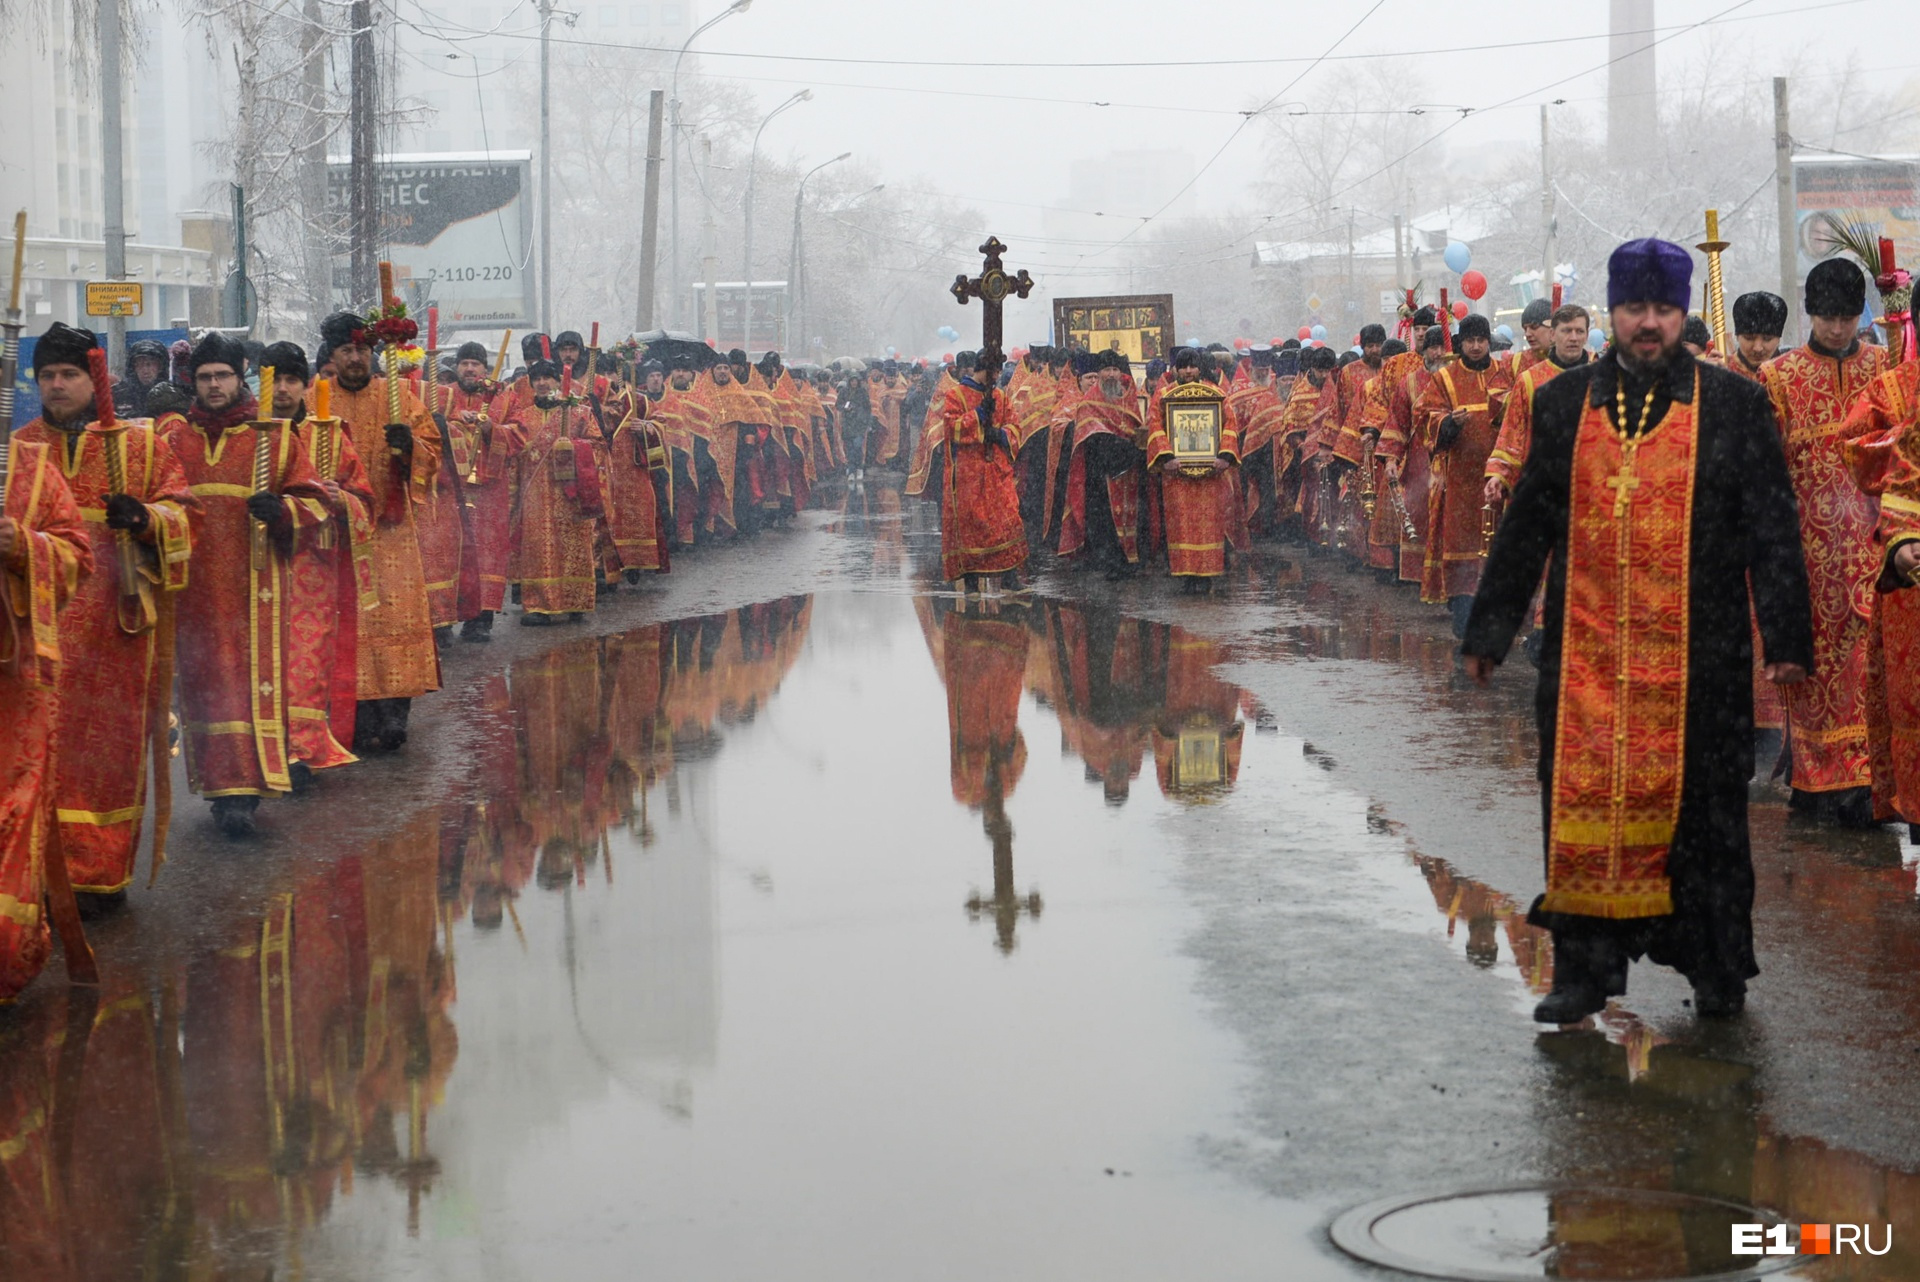 Крестный ход в Екатеринбурге: на пути верующим встретилась огромная лужа, но повторять чудо хождения по воде никто не решился 